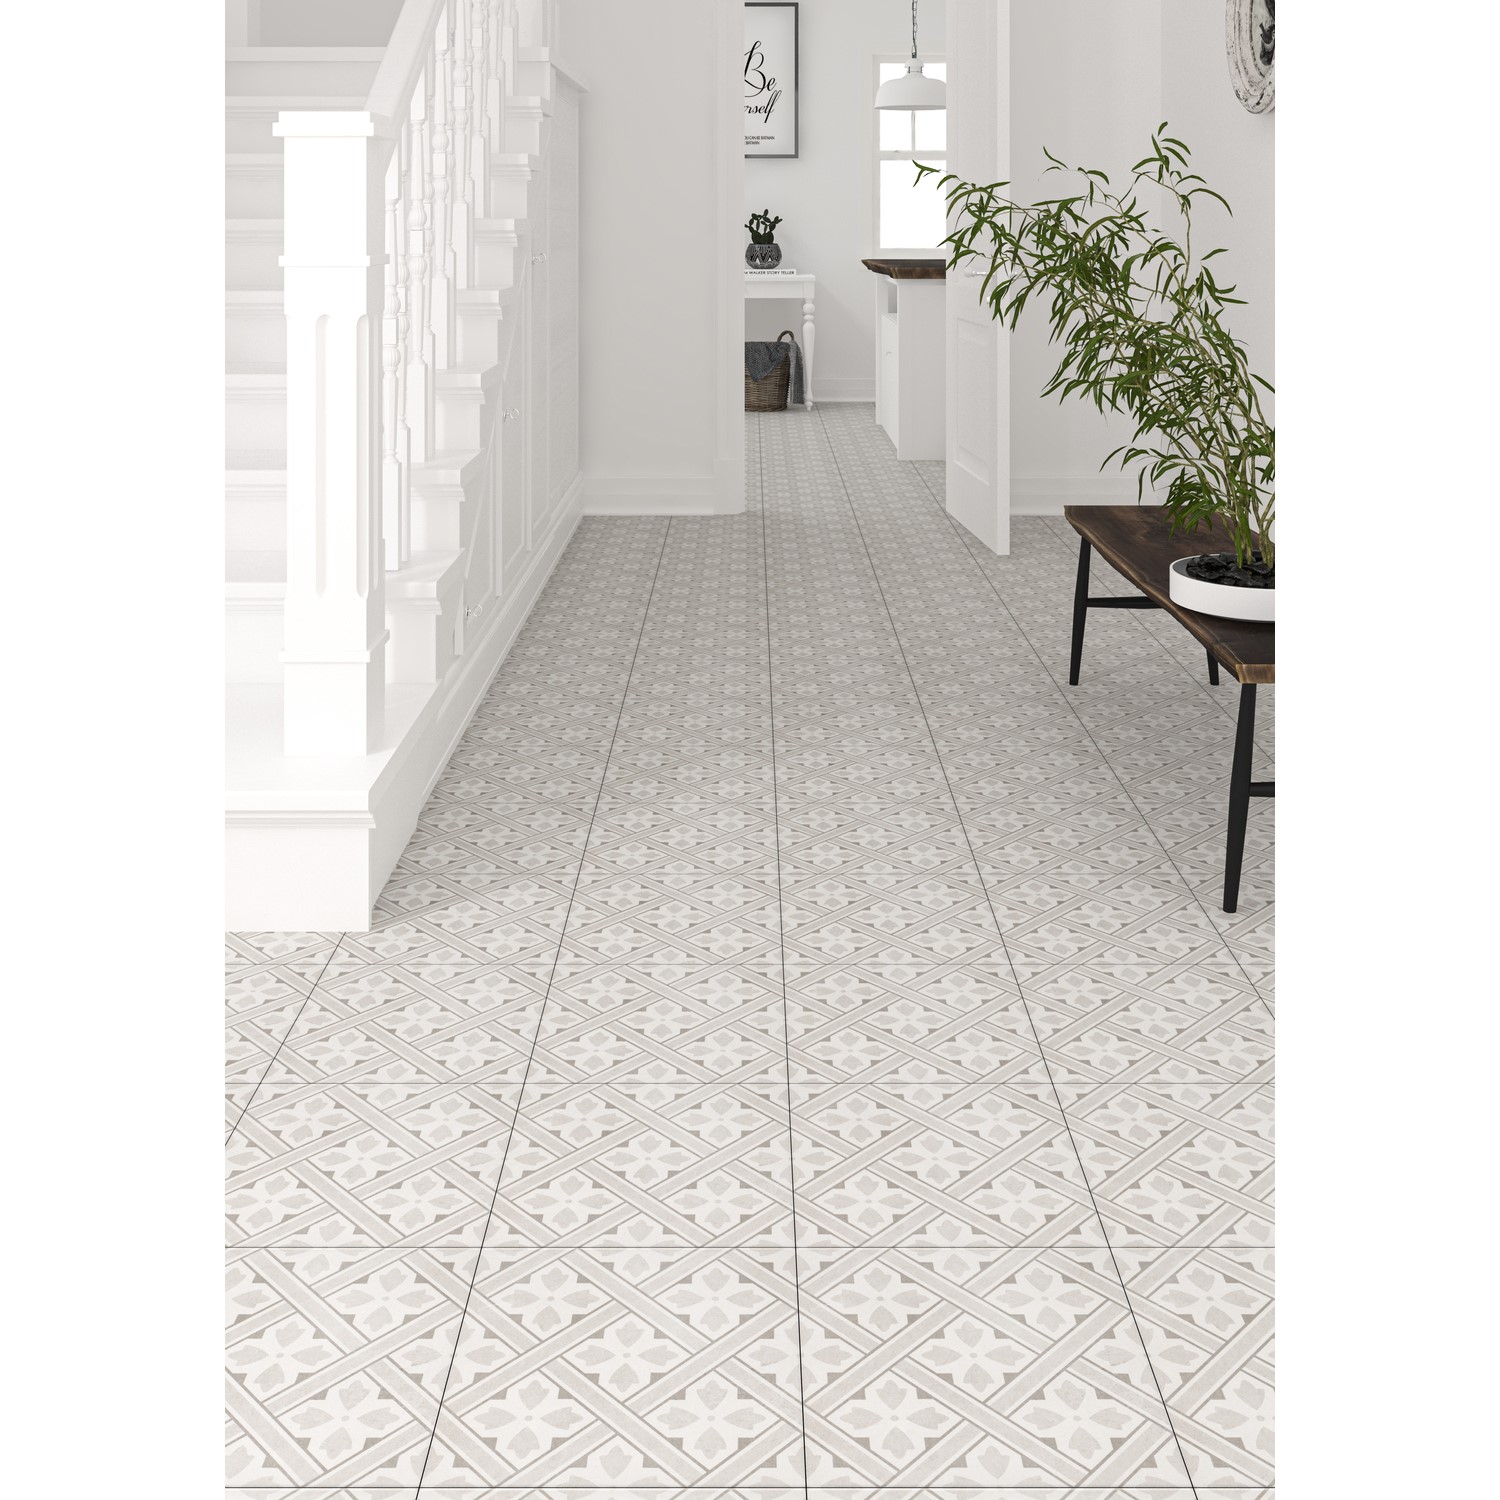 Beige Patterned Floor Tile 33 X 33cm, Patterned Floor Tile